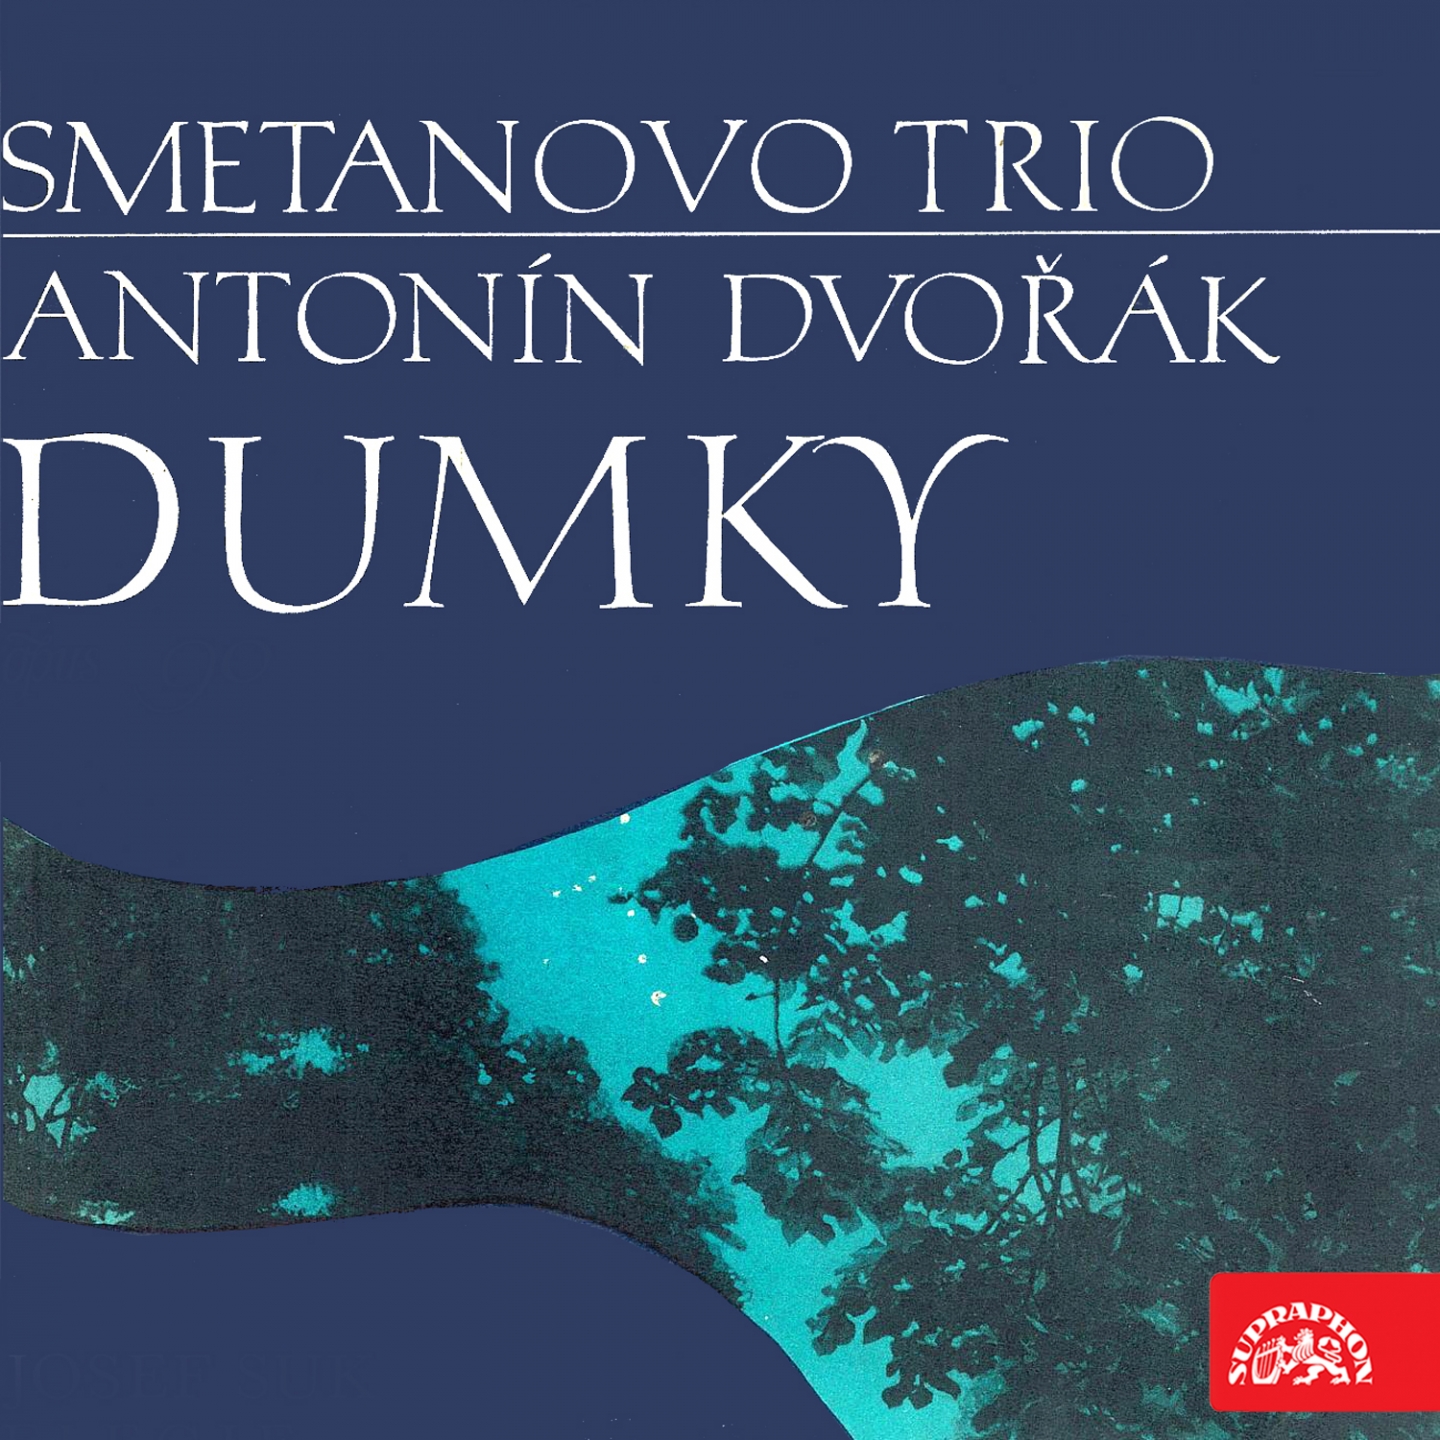 Piano Trio No. 4 in E Minor, Op. 90, B. 166 "Dumky": I. Lento maestoso